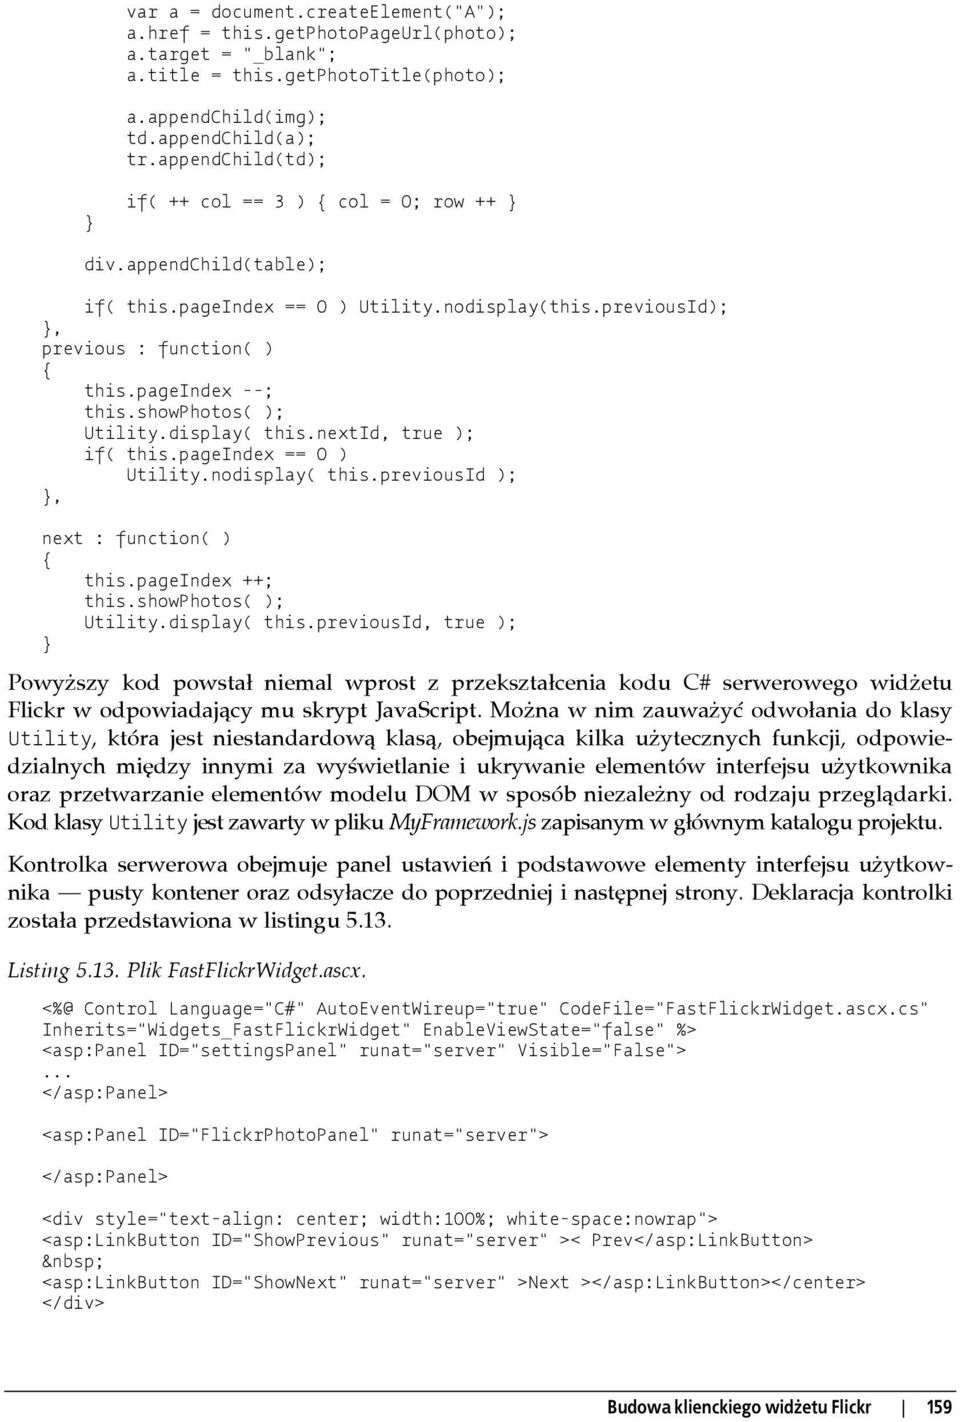 showphotos( ); Utility.display( this.nextid, true ); if( this.pageindex == 0 ) Utility.nodisplay( this.previousid );, next : function( ) this.pageindex ++; this.showphotos( ); Utility.display( this.previousid, true ); Powyższy kod powstał niemal wprost z przekształcenia kodu C# serwerowego widżetu Flickr w odpowiadający mu skrypt JavaScript.